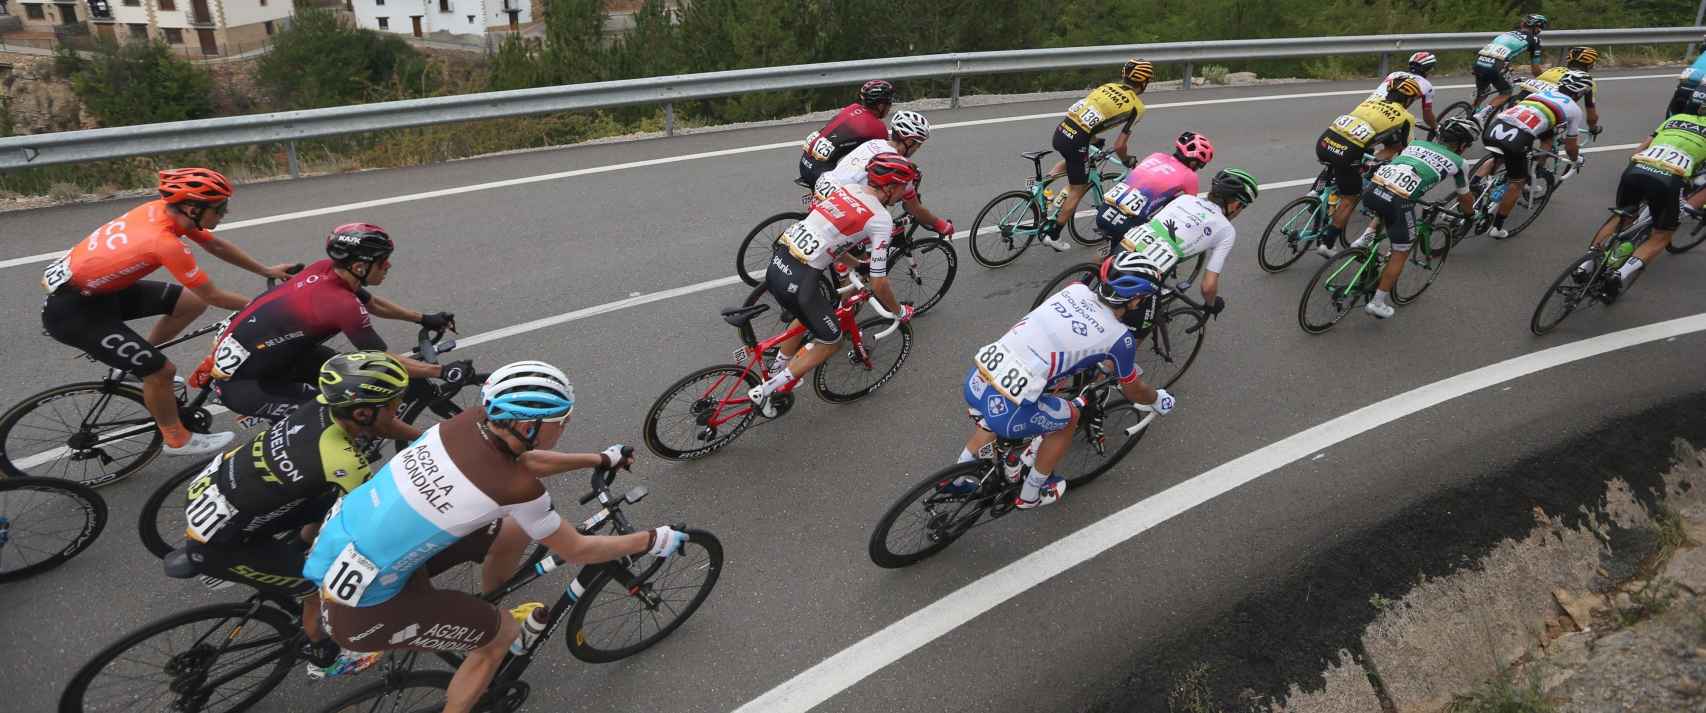 La Vuelta a España